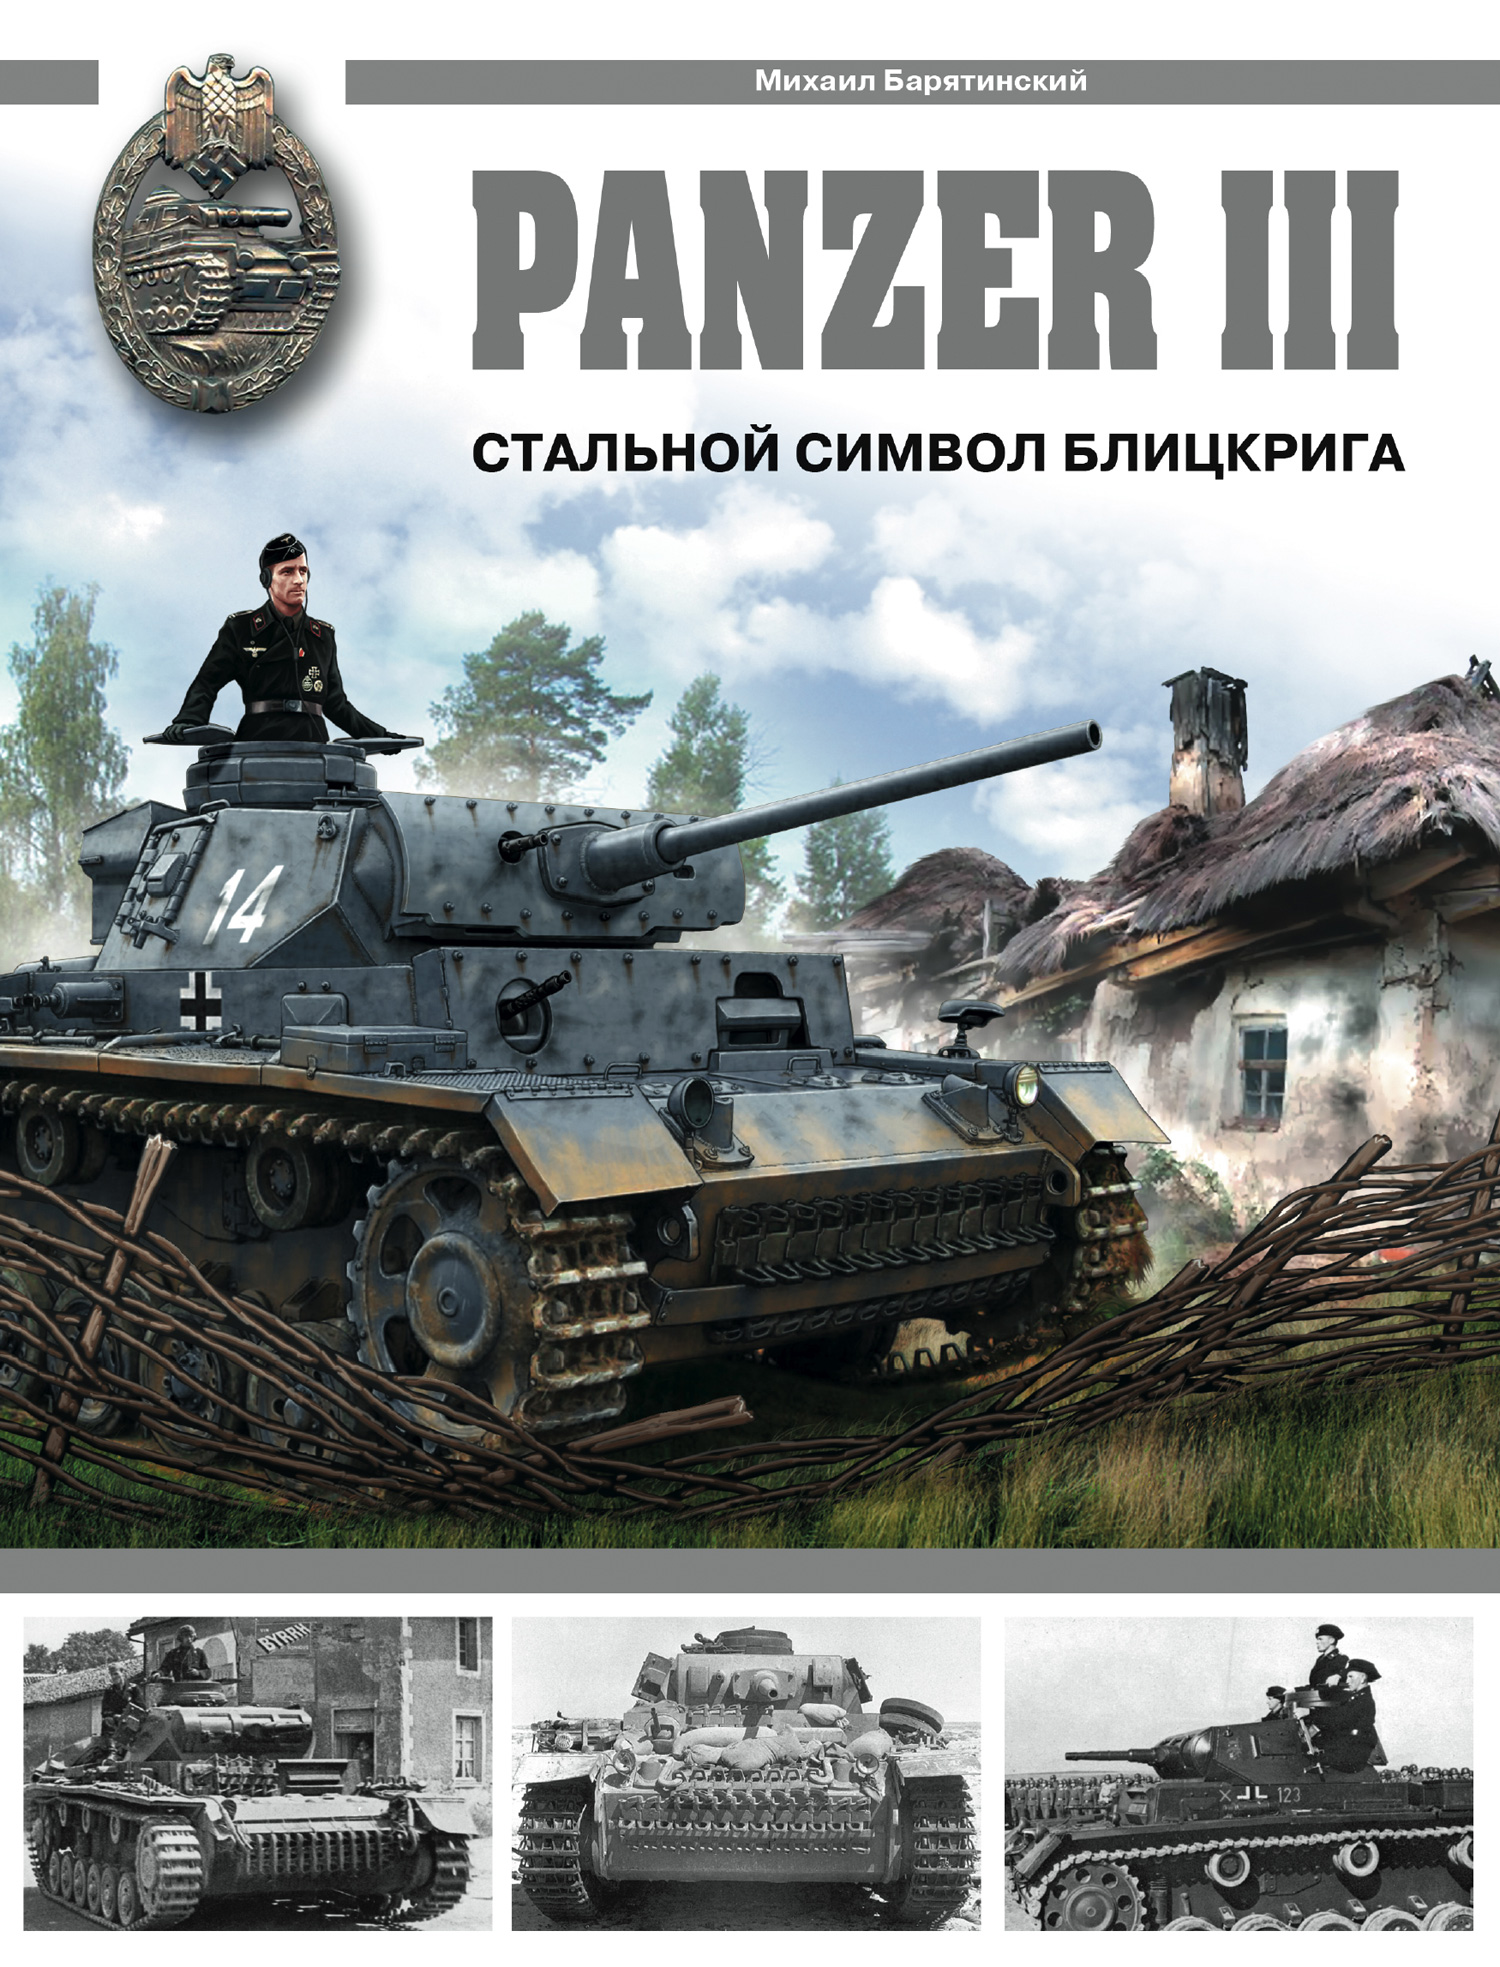 Panzer III.Стальной символ блицкрига